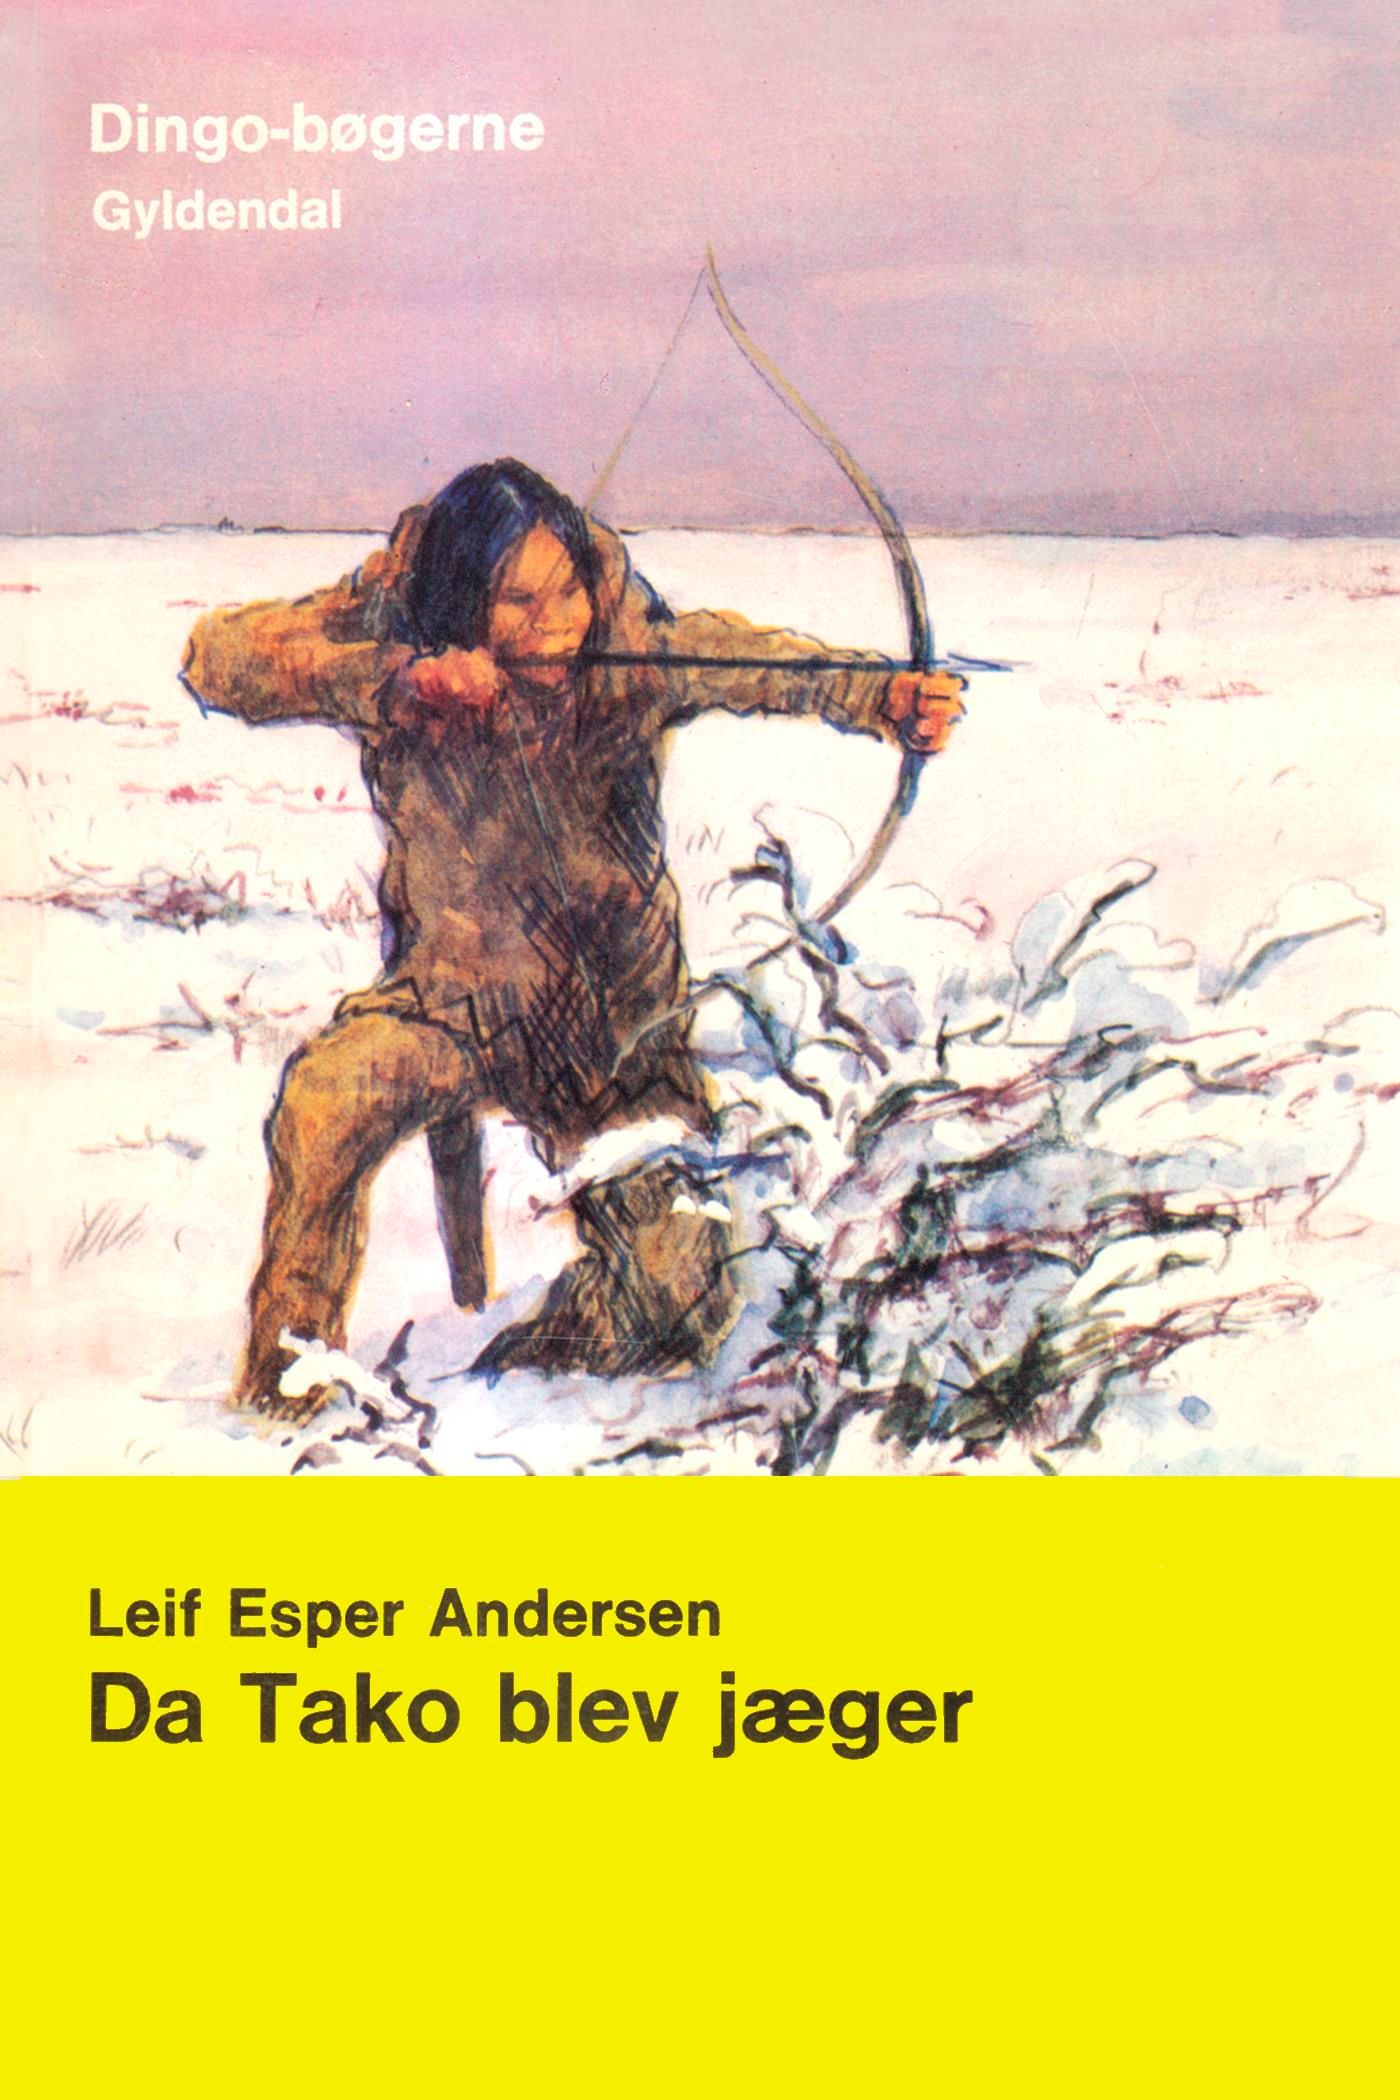 Da Tako blev jæger, e-bok av Leif Esper Andersen